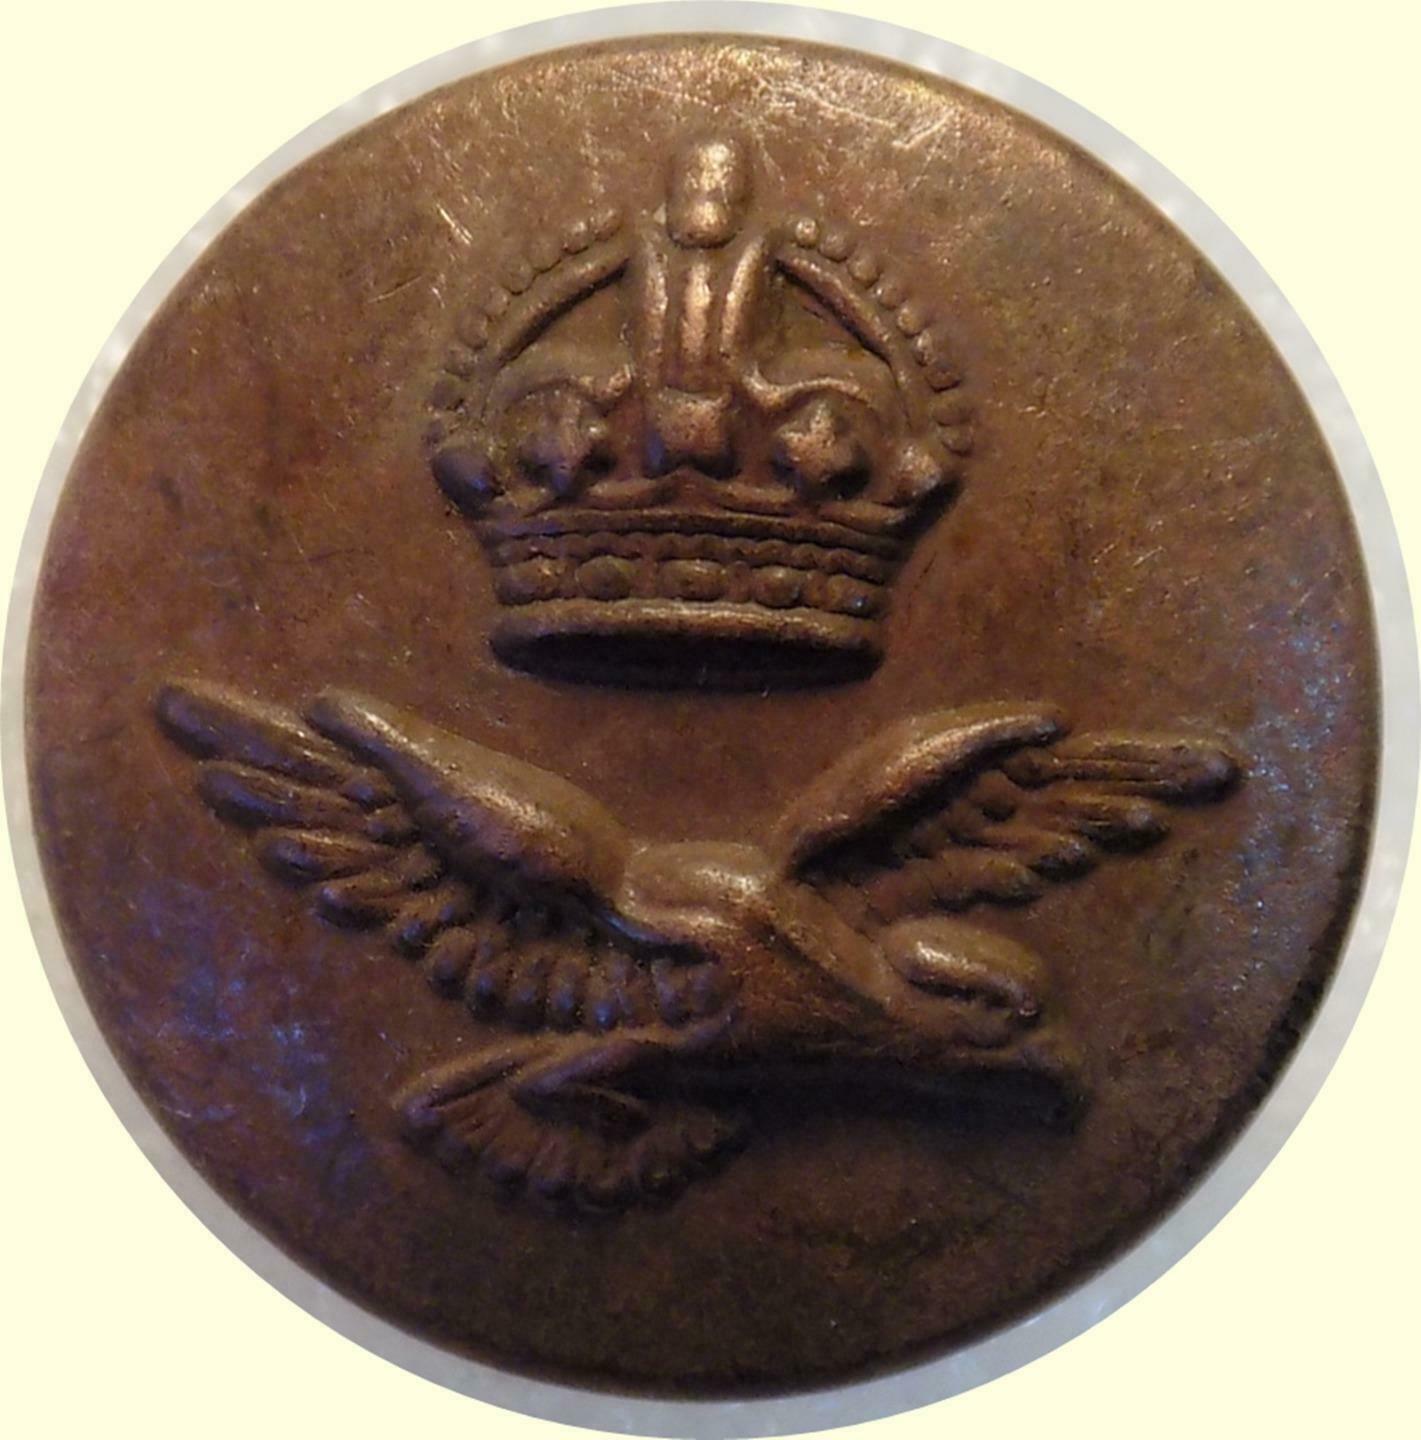 Original Ww2 Royal Air Force Raf Button 24mm Subduded Cheney Birmingham